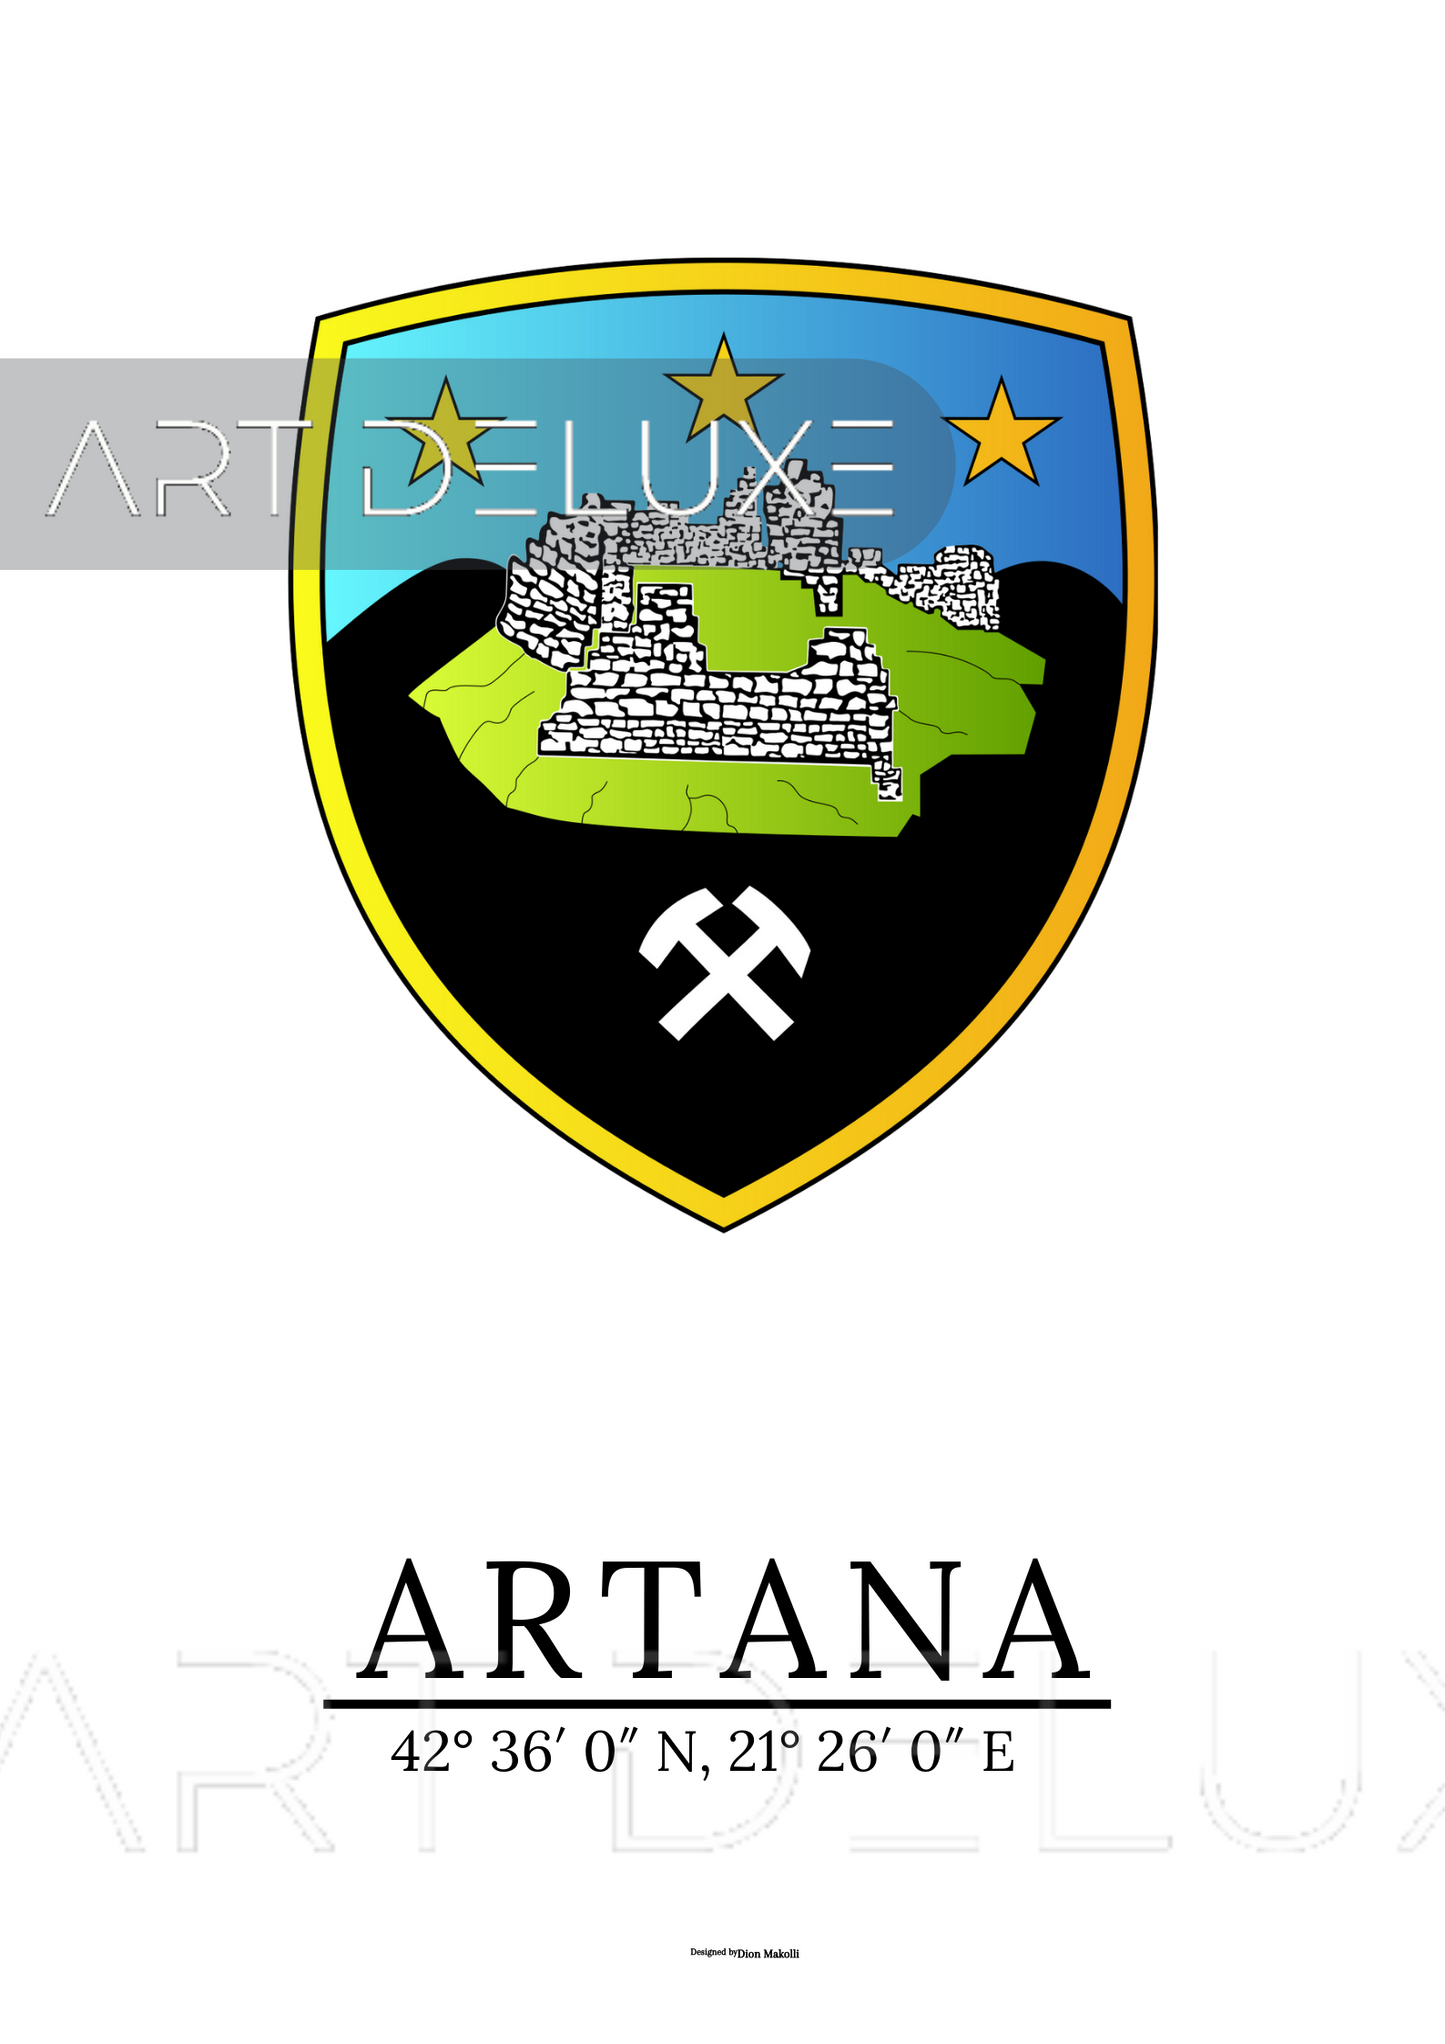 Artanas Emblem